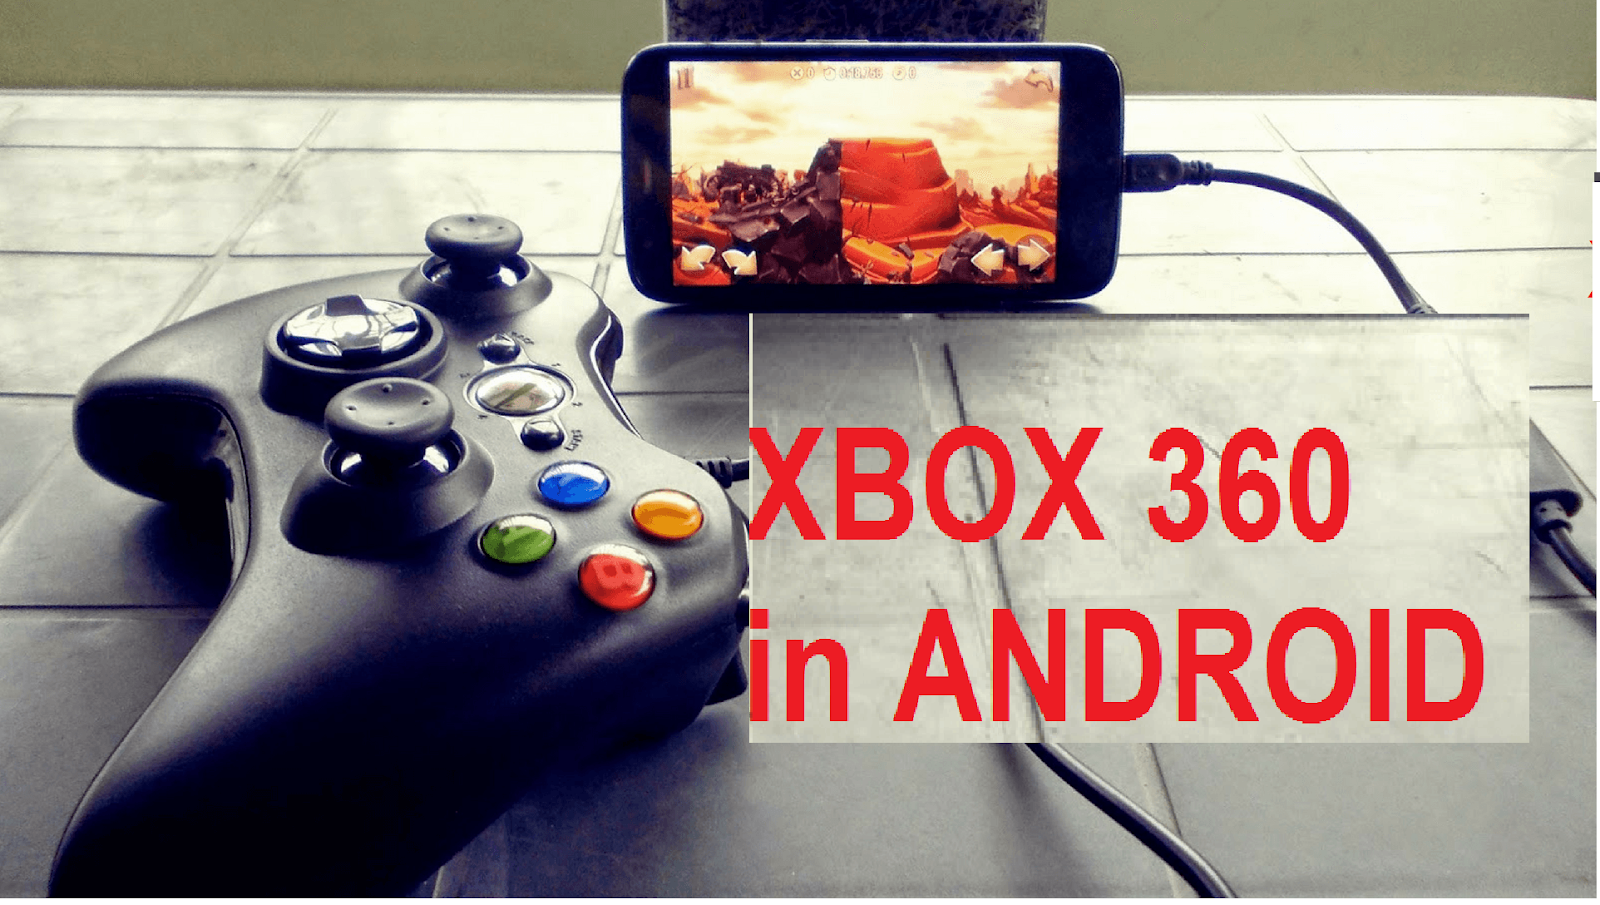 Xbox 360 эмулятор андроид. Эмулятор хбокс 360 на андроид. Xbox 360 Emulator Android.